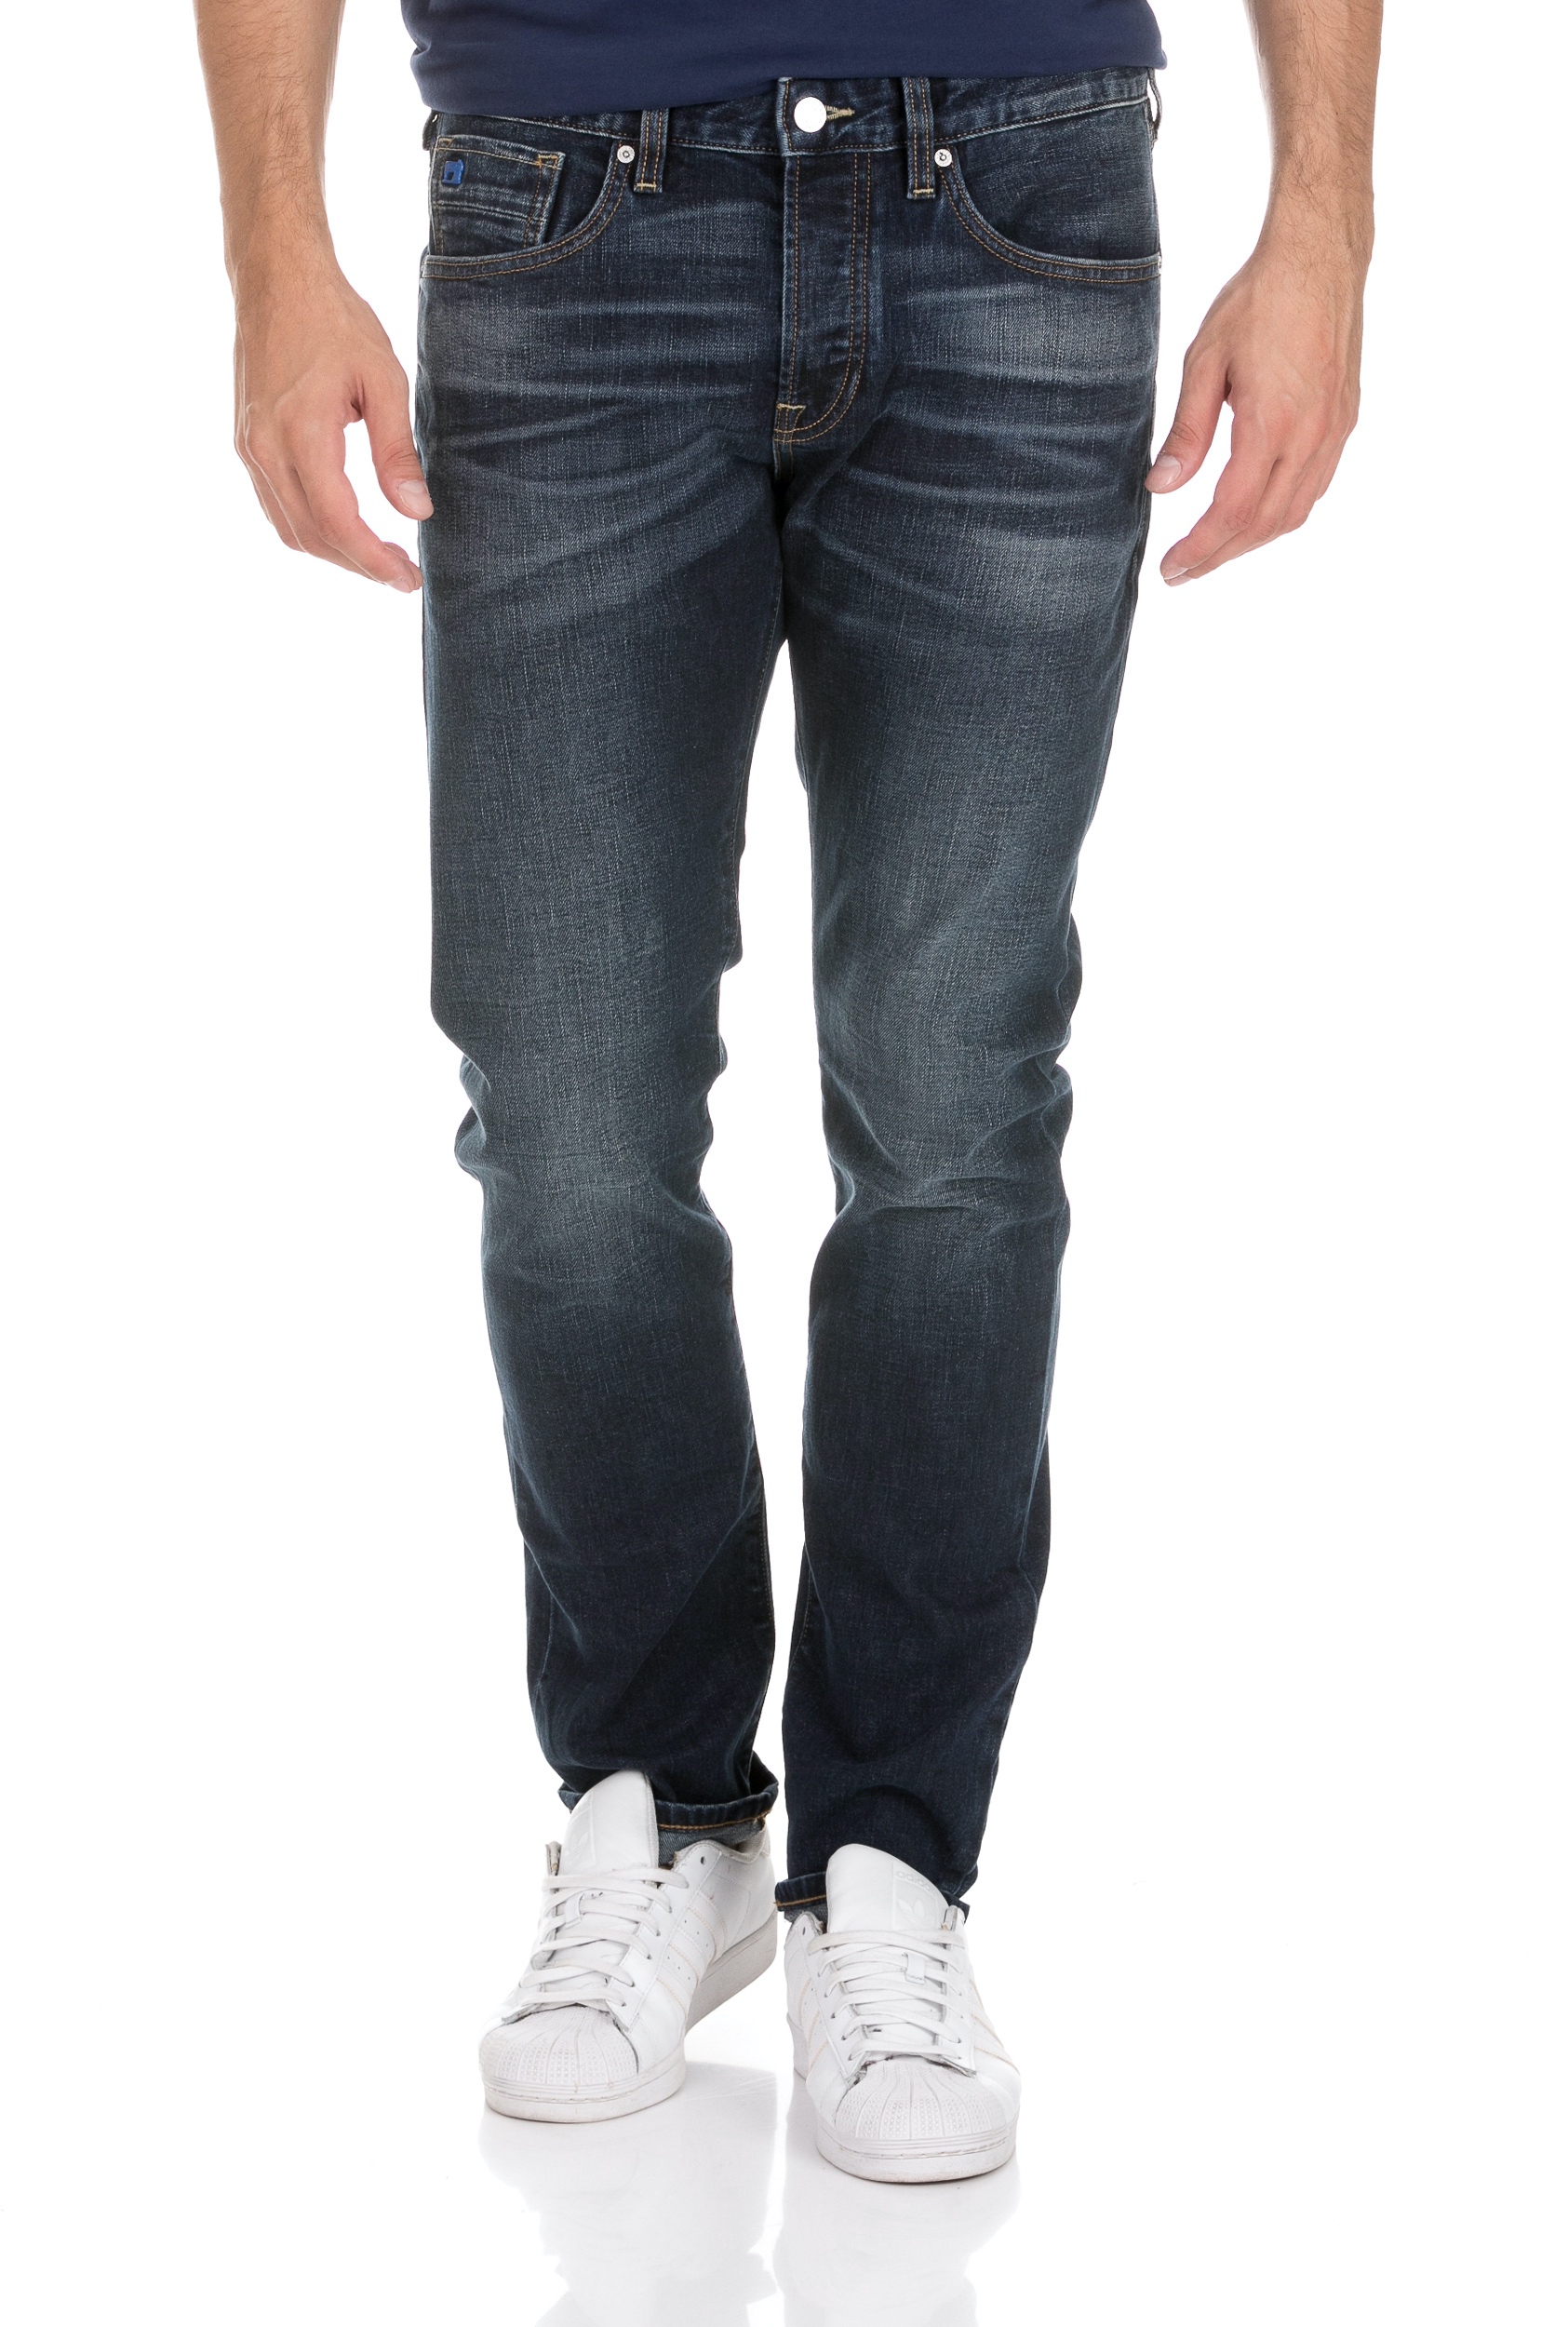 Ανδρικά/Ρούχα/Τζίν/Skinny SCOTCH & SODA - Ανδρικό jean παντελόνι SCOTCH & SODA μπλε